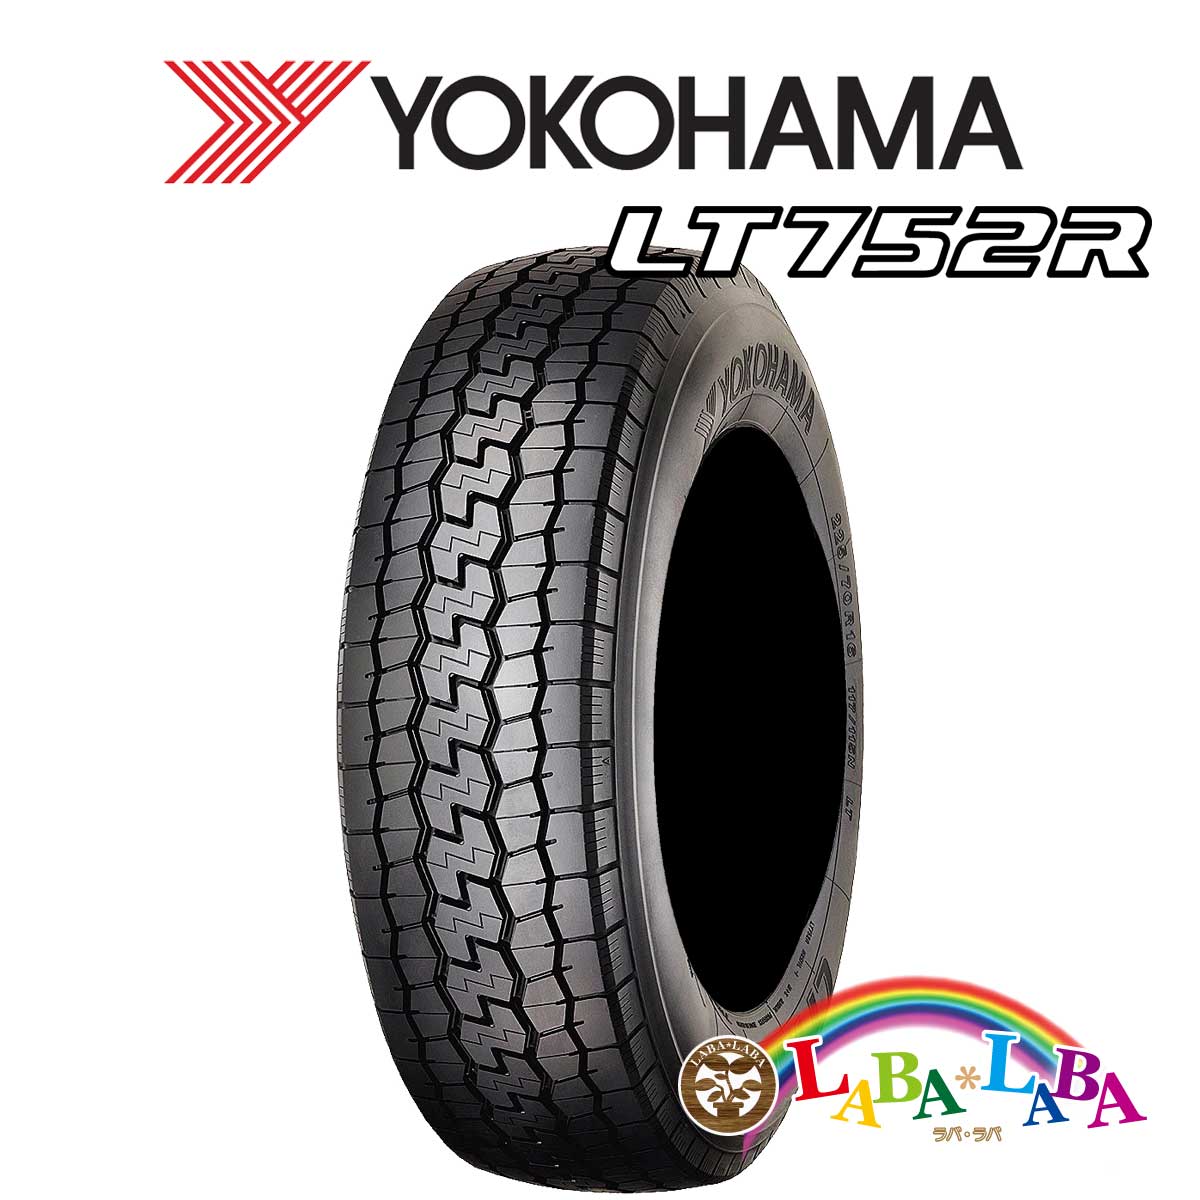 送料無料 国産タイヤ サマータイヤ 新品 タイヤのみ 2本SET YOKOHAMA ヨコハマ 安売り 超安い 2本セット 85R16 LT752R 215 118N バン 120 LT